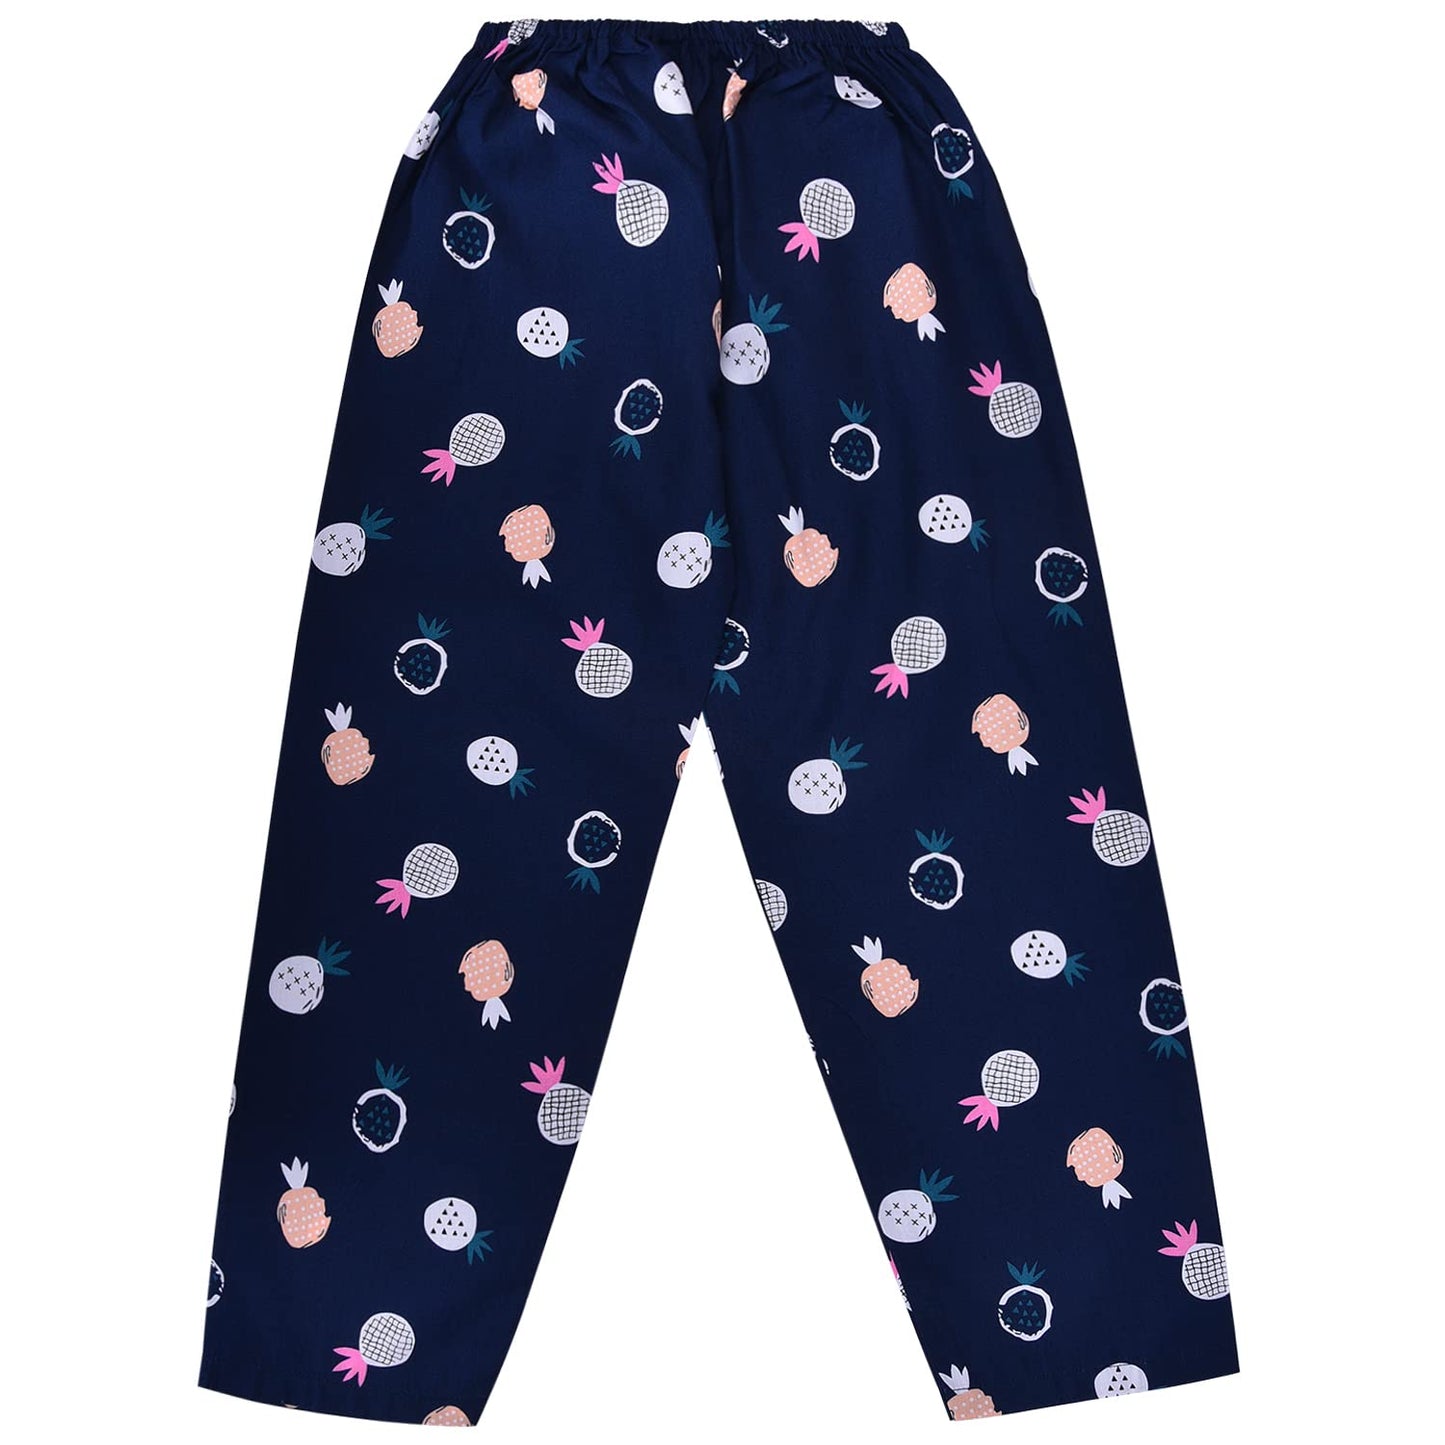 Wish Karo Cotton Printed Top & Bottom Pajama Set Night Dress for Boys & Girls-(ND31nb)